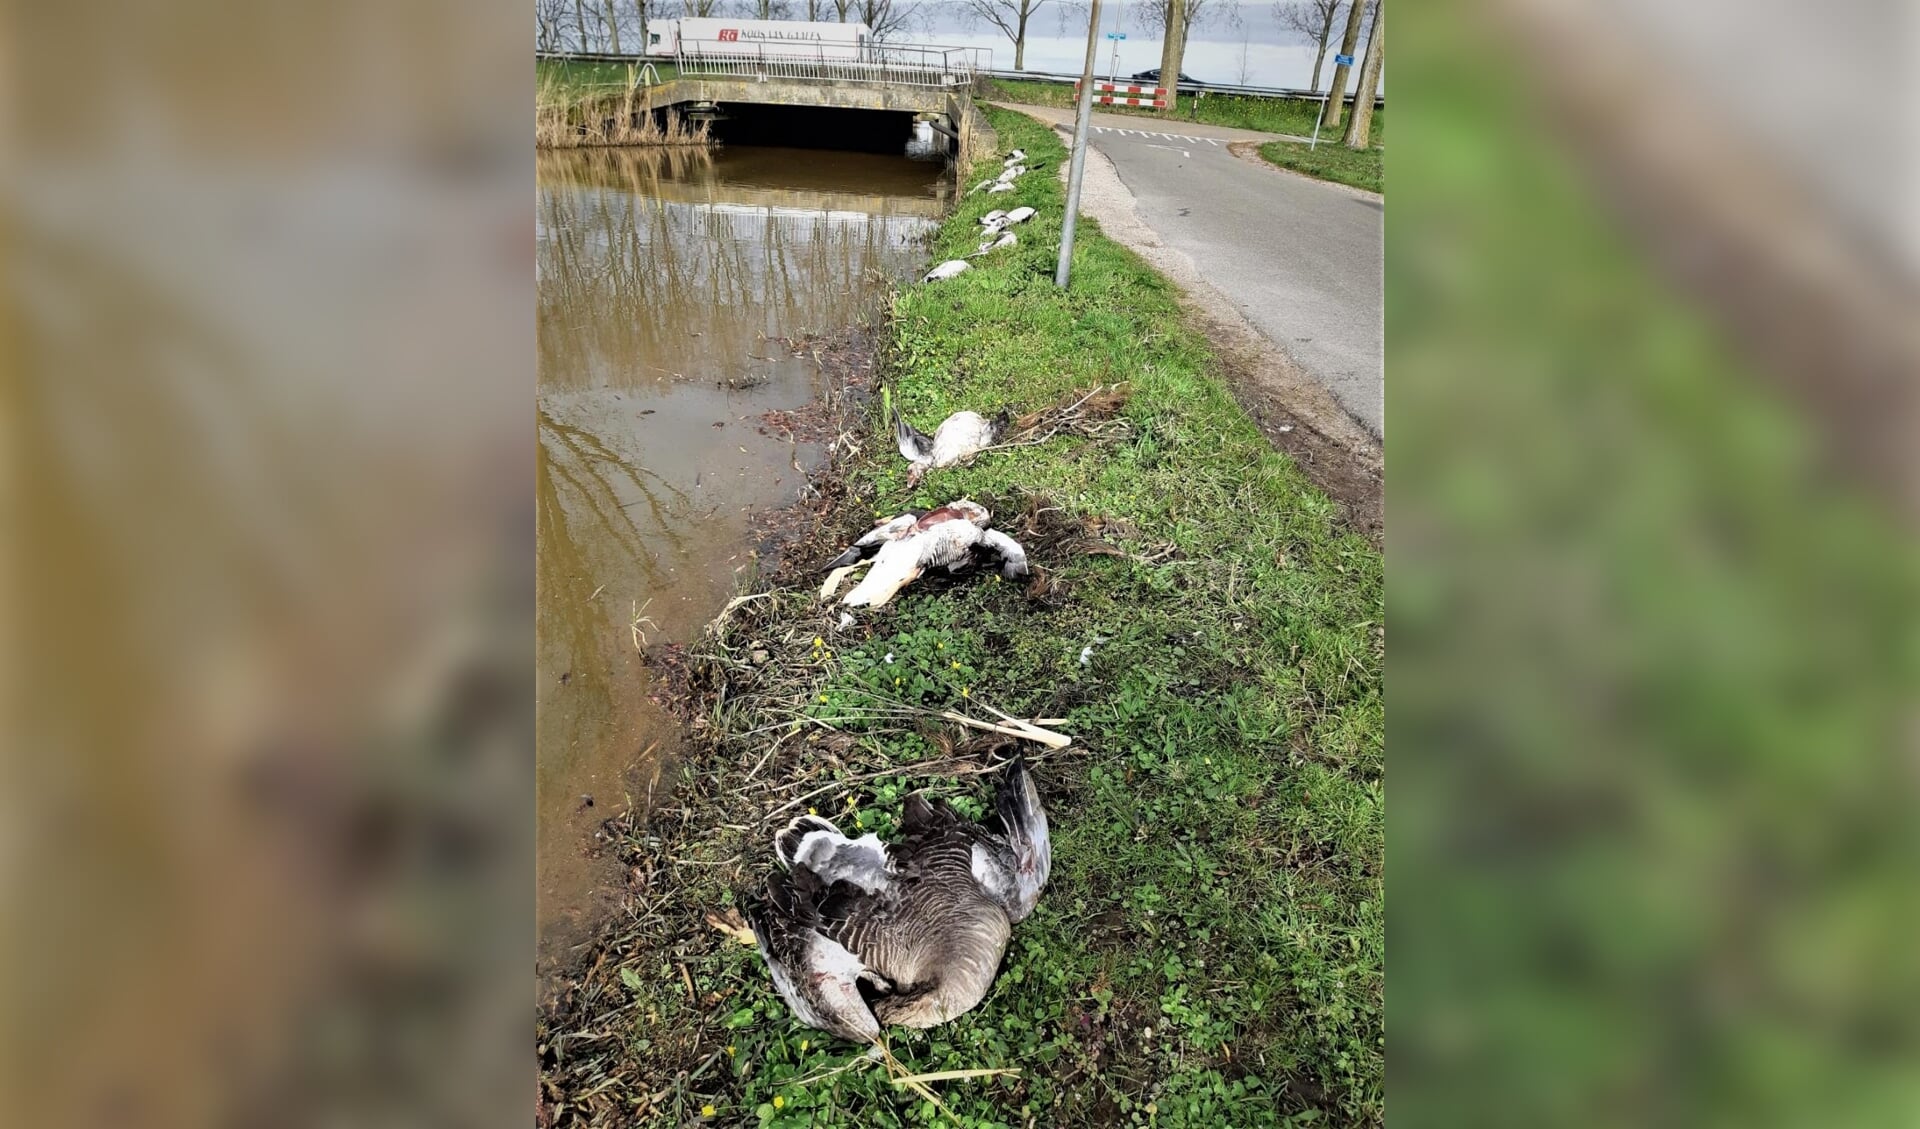 De ganzen zijn gemutileerd langs het water in Nieuwerkerk aangetroffen.